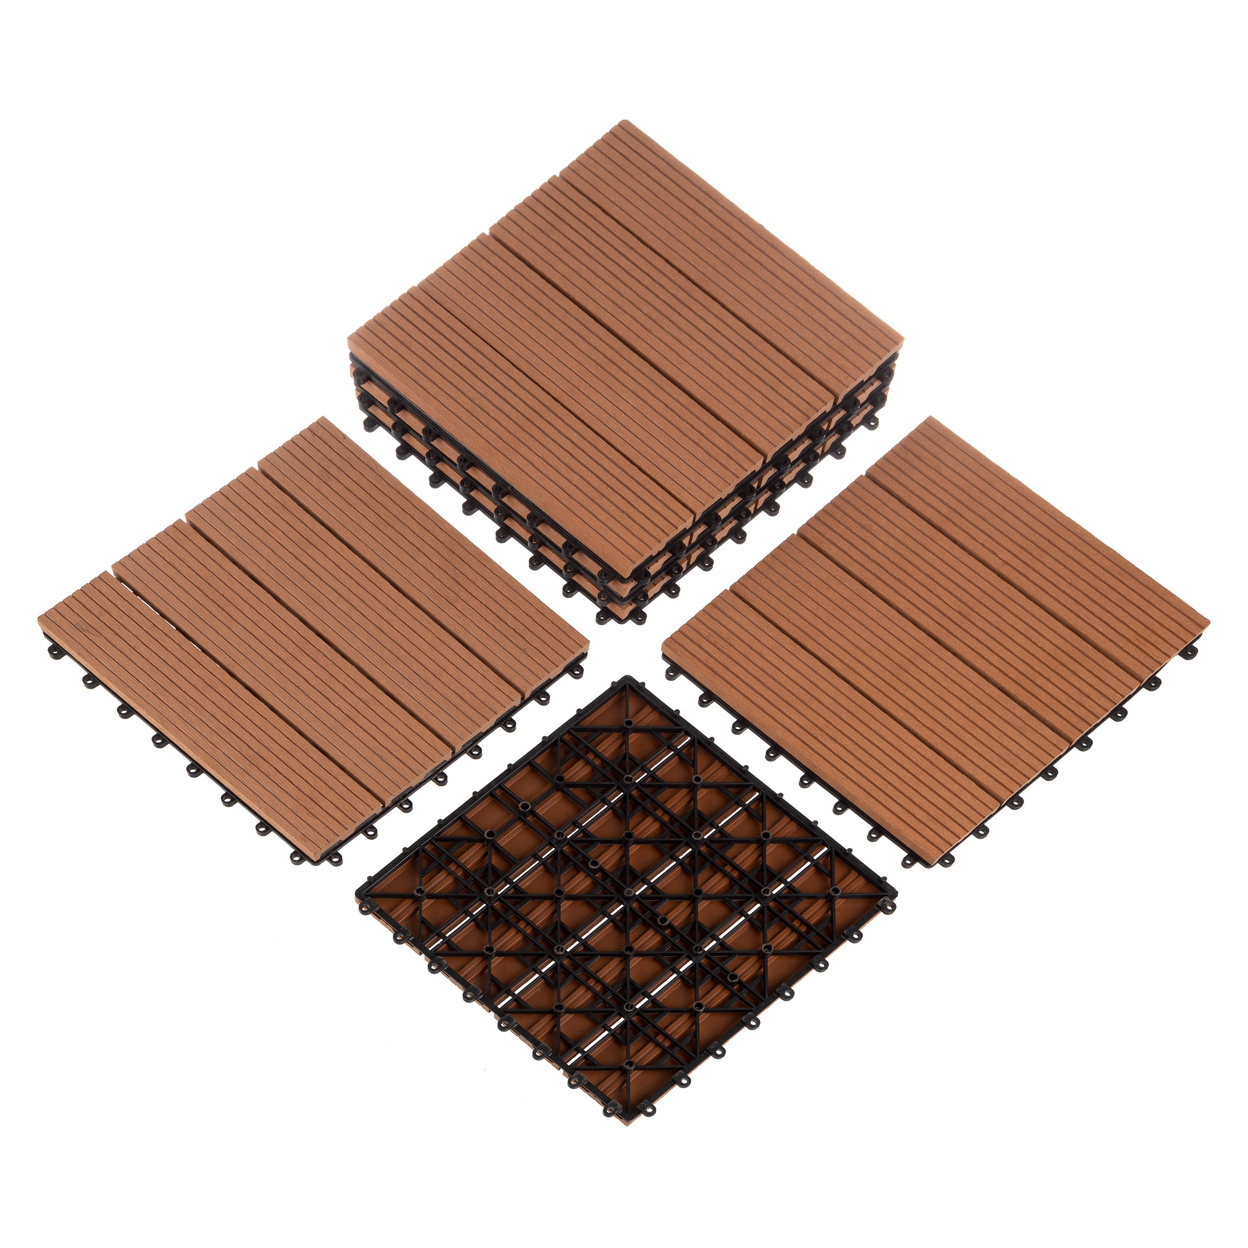 6 Sets Patio Floor Tiles Wood/Plastic Composite Interlocking Deck Tiles, Brown